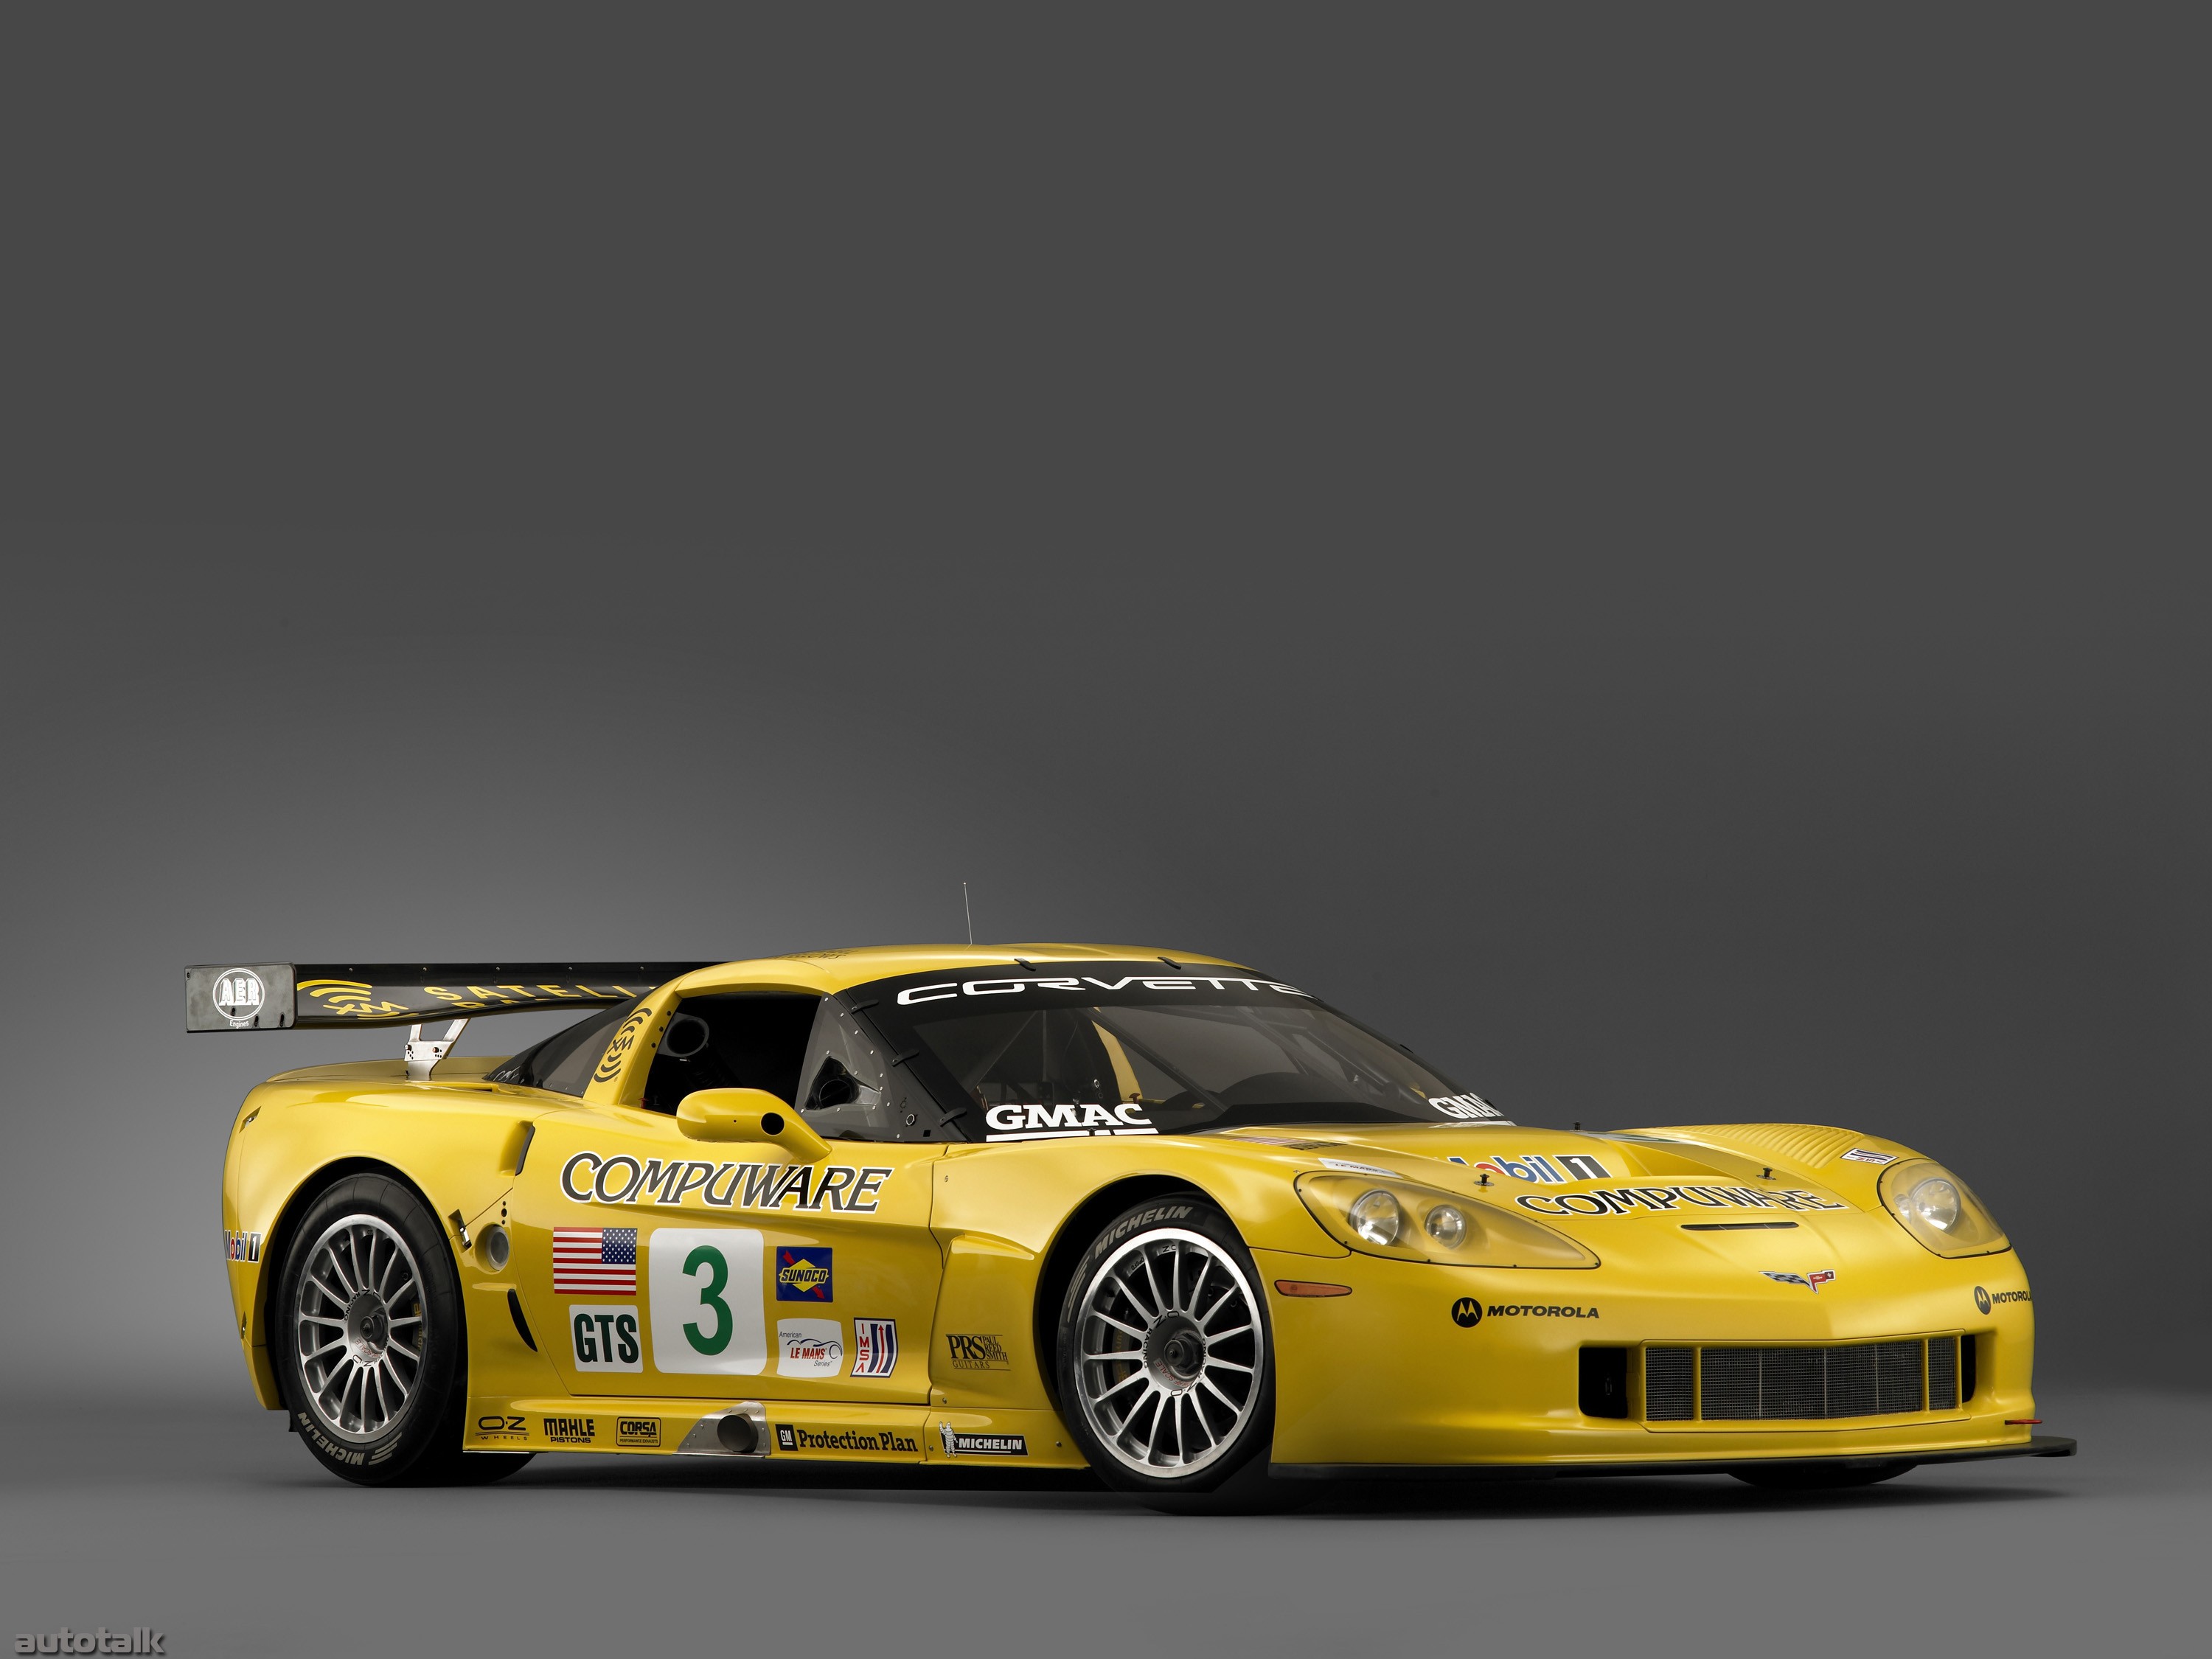 2005 Chevrolet Corvette C6R Race Car